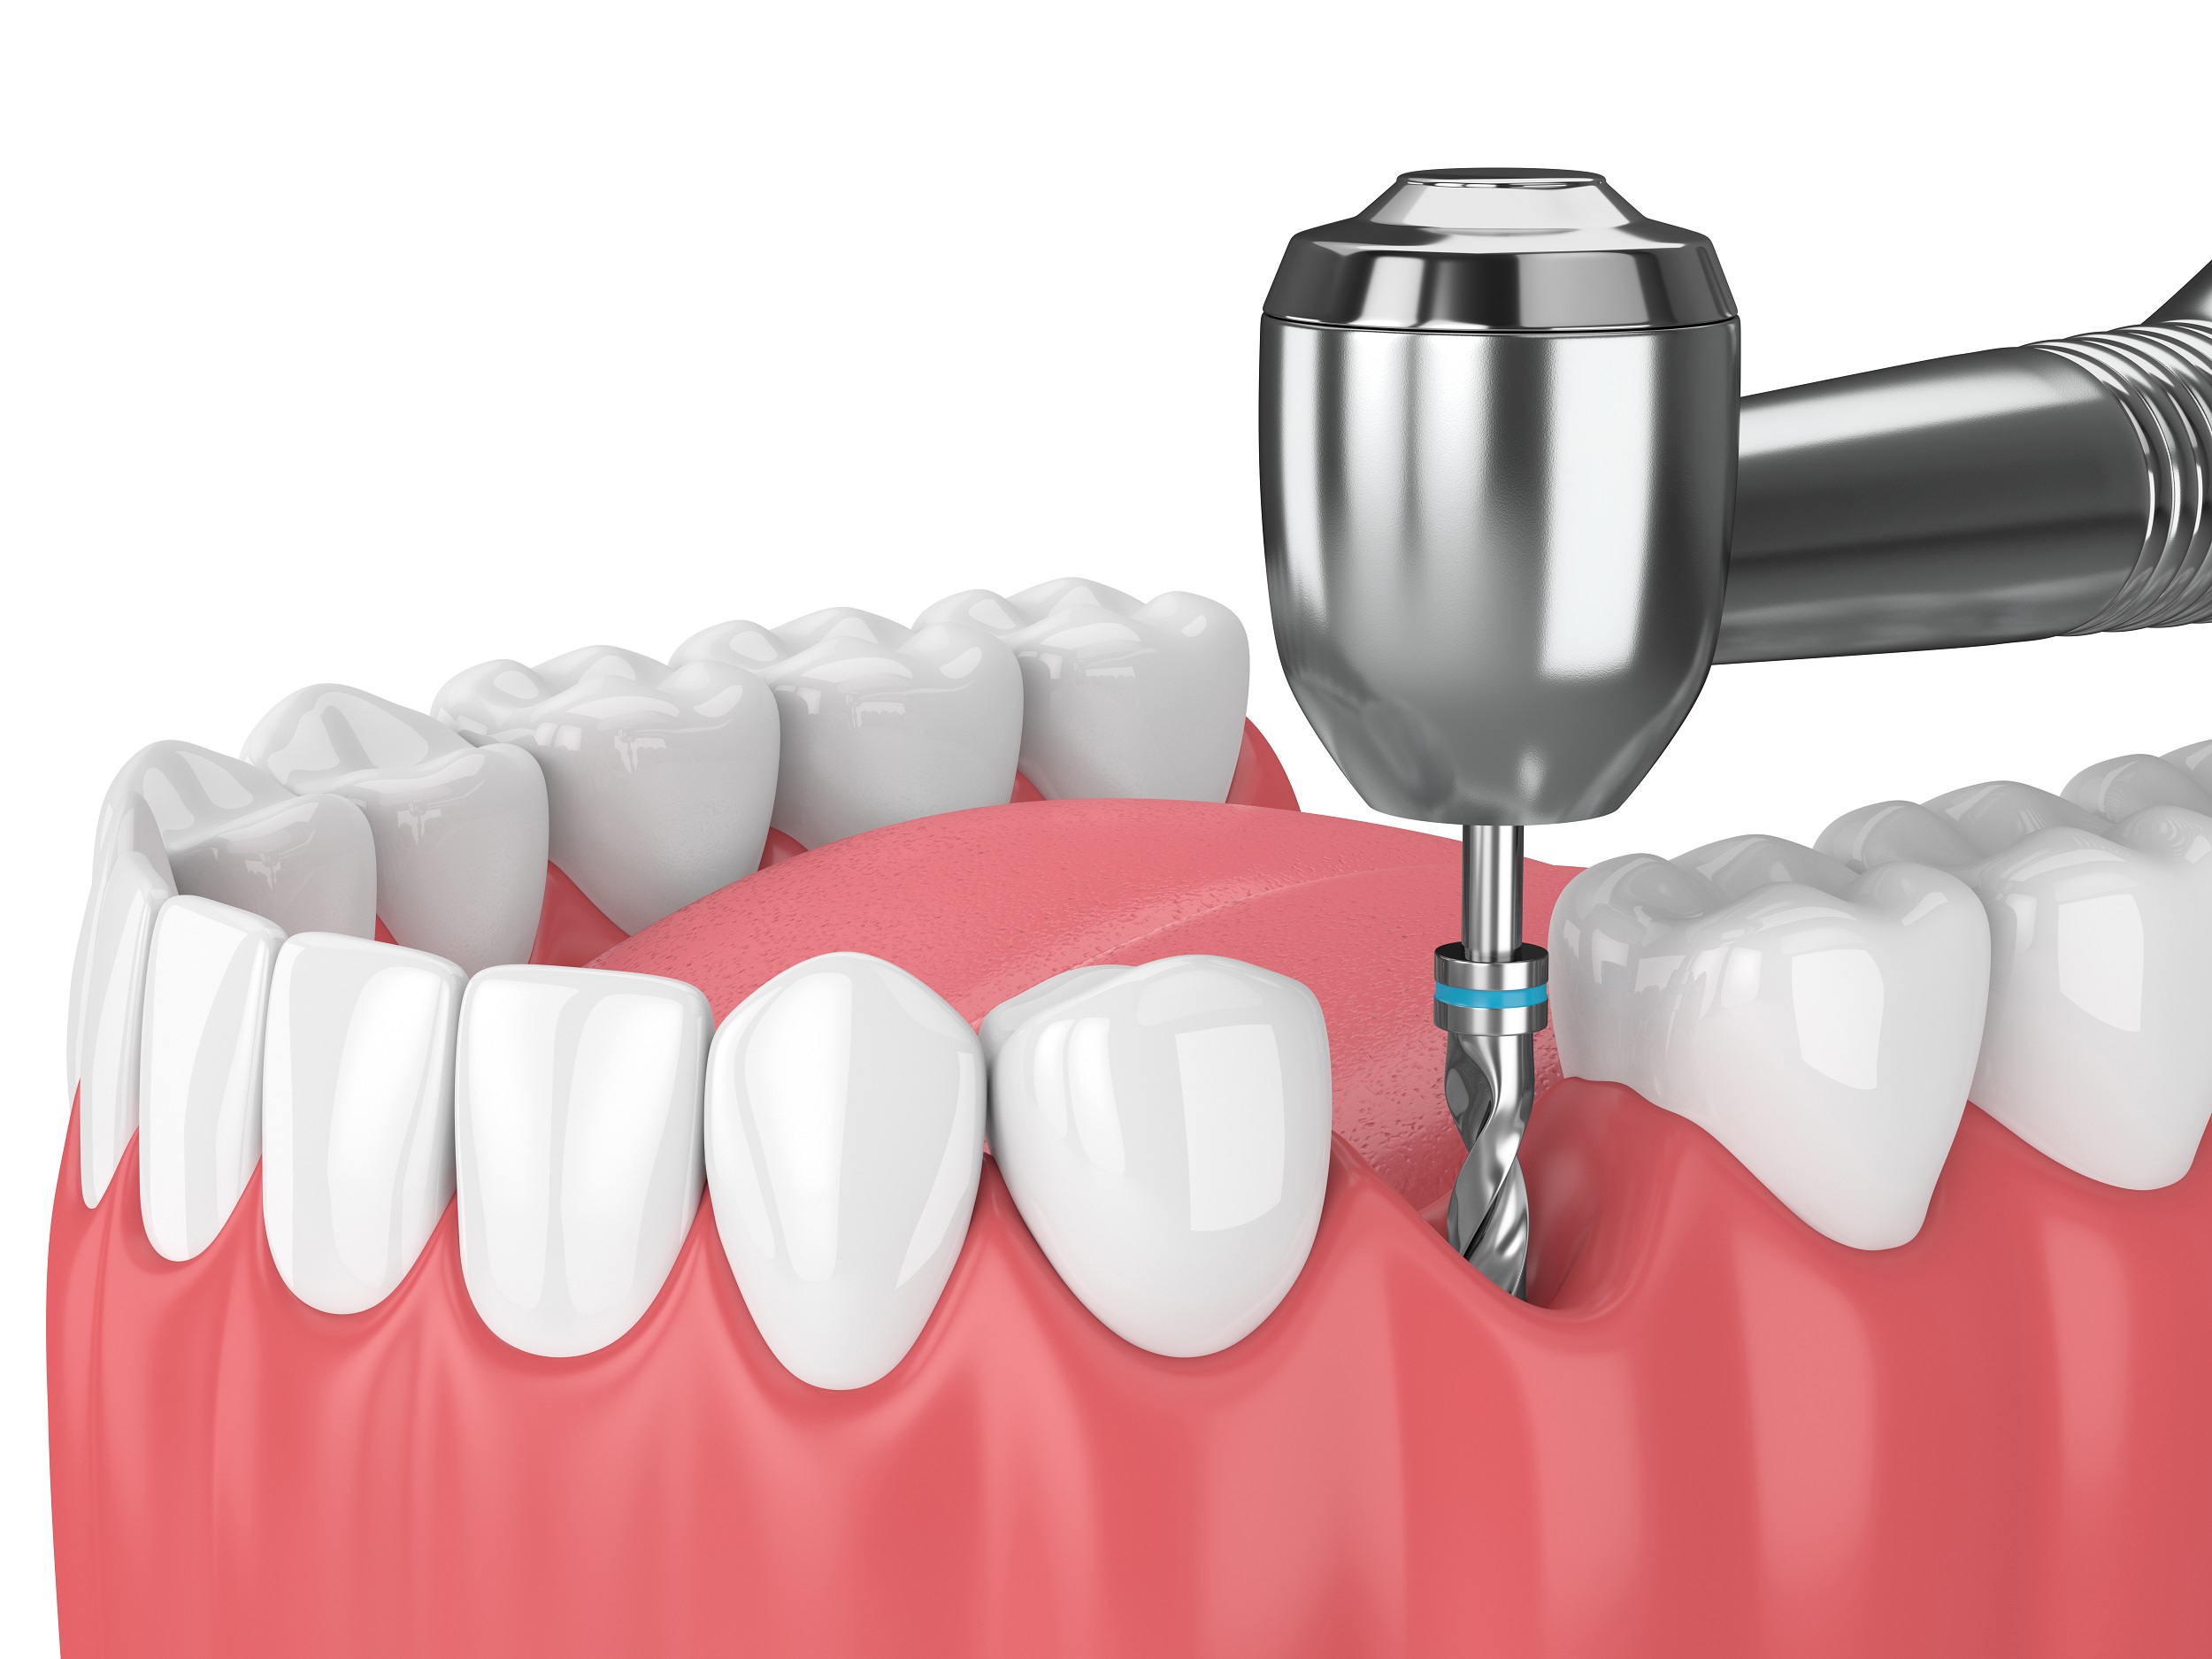 Comment se déroule pose d'implant dentaire et la chirurgie ?